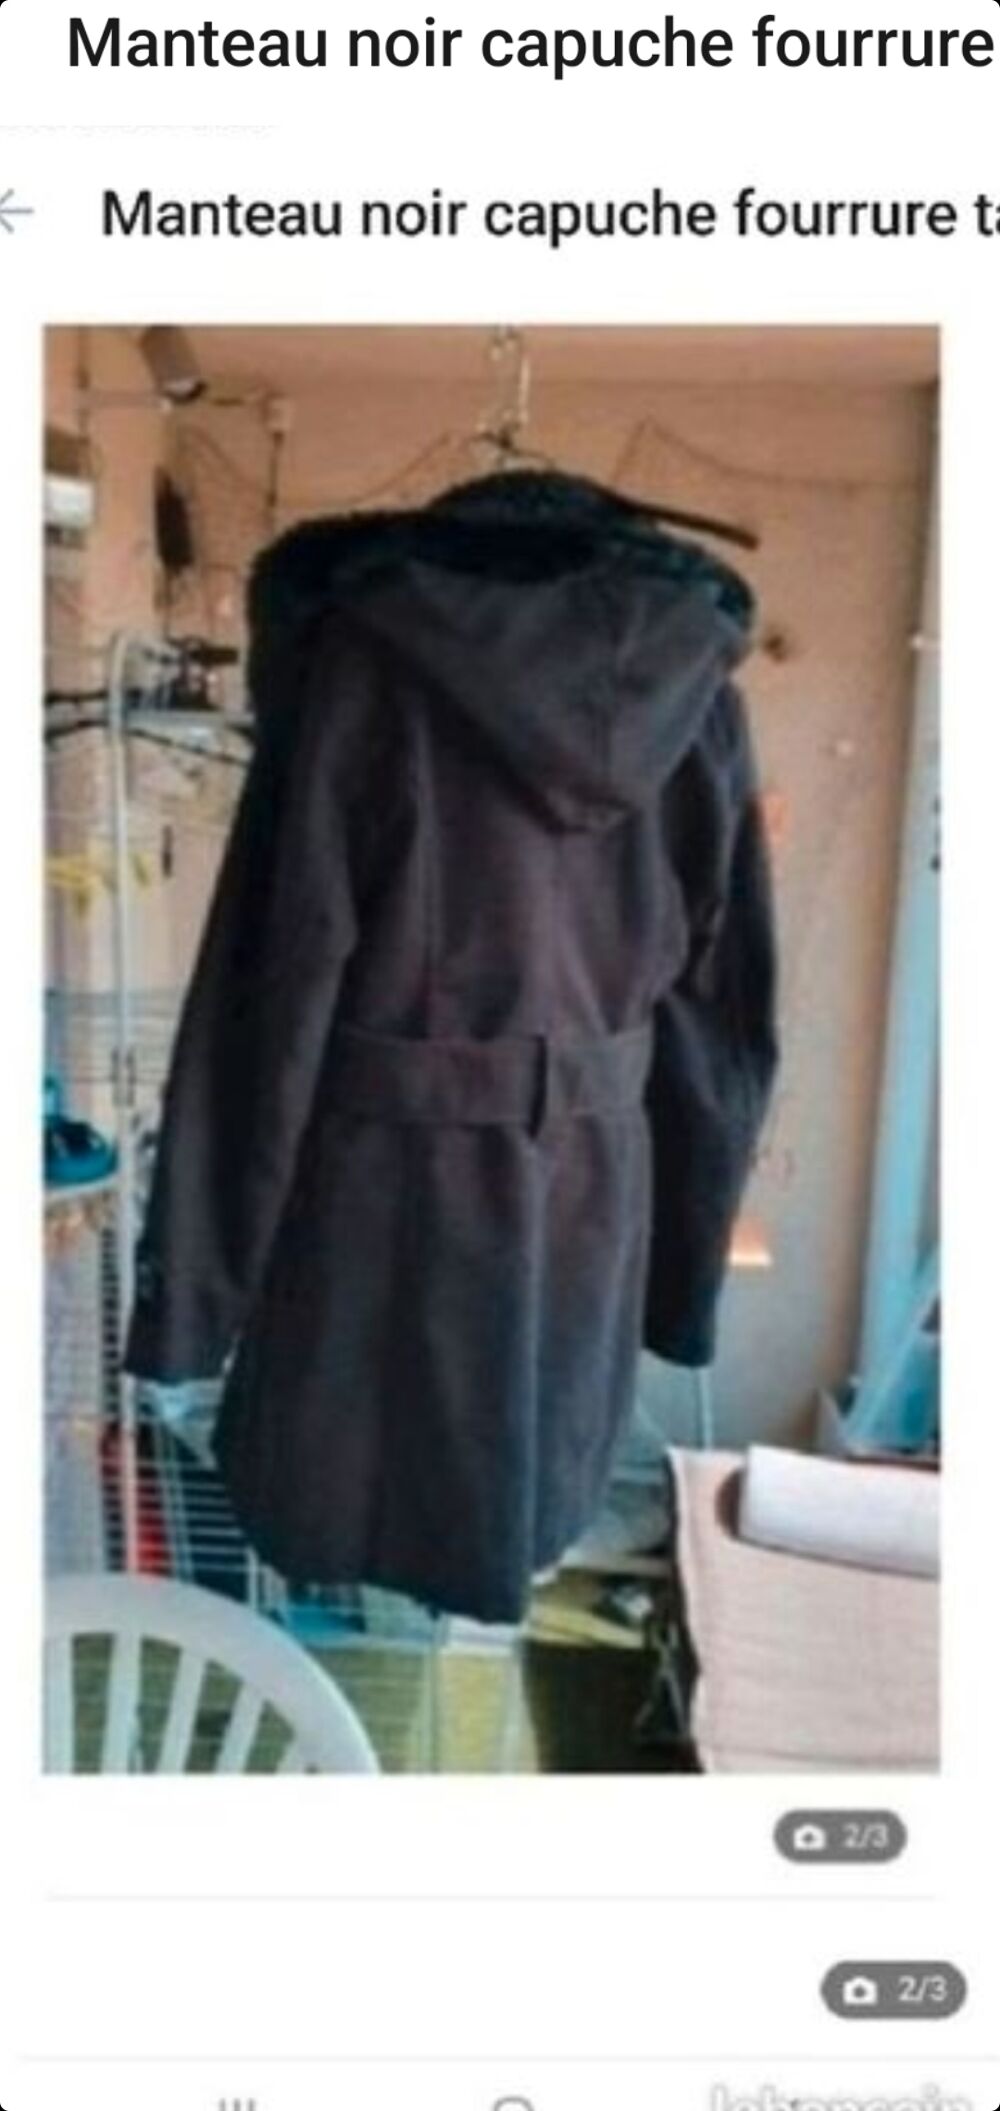 manteau noir capuche fourrure taille 40 Vtements